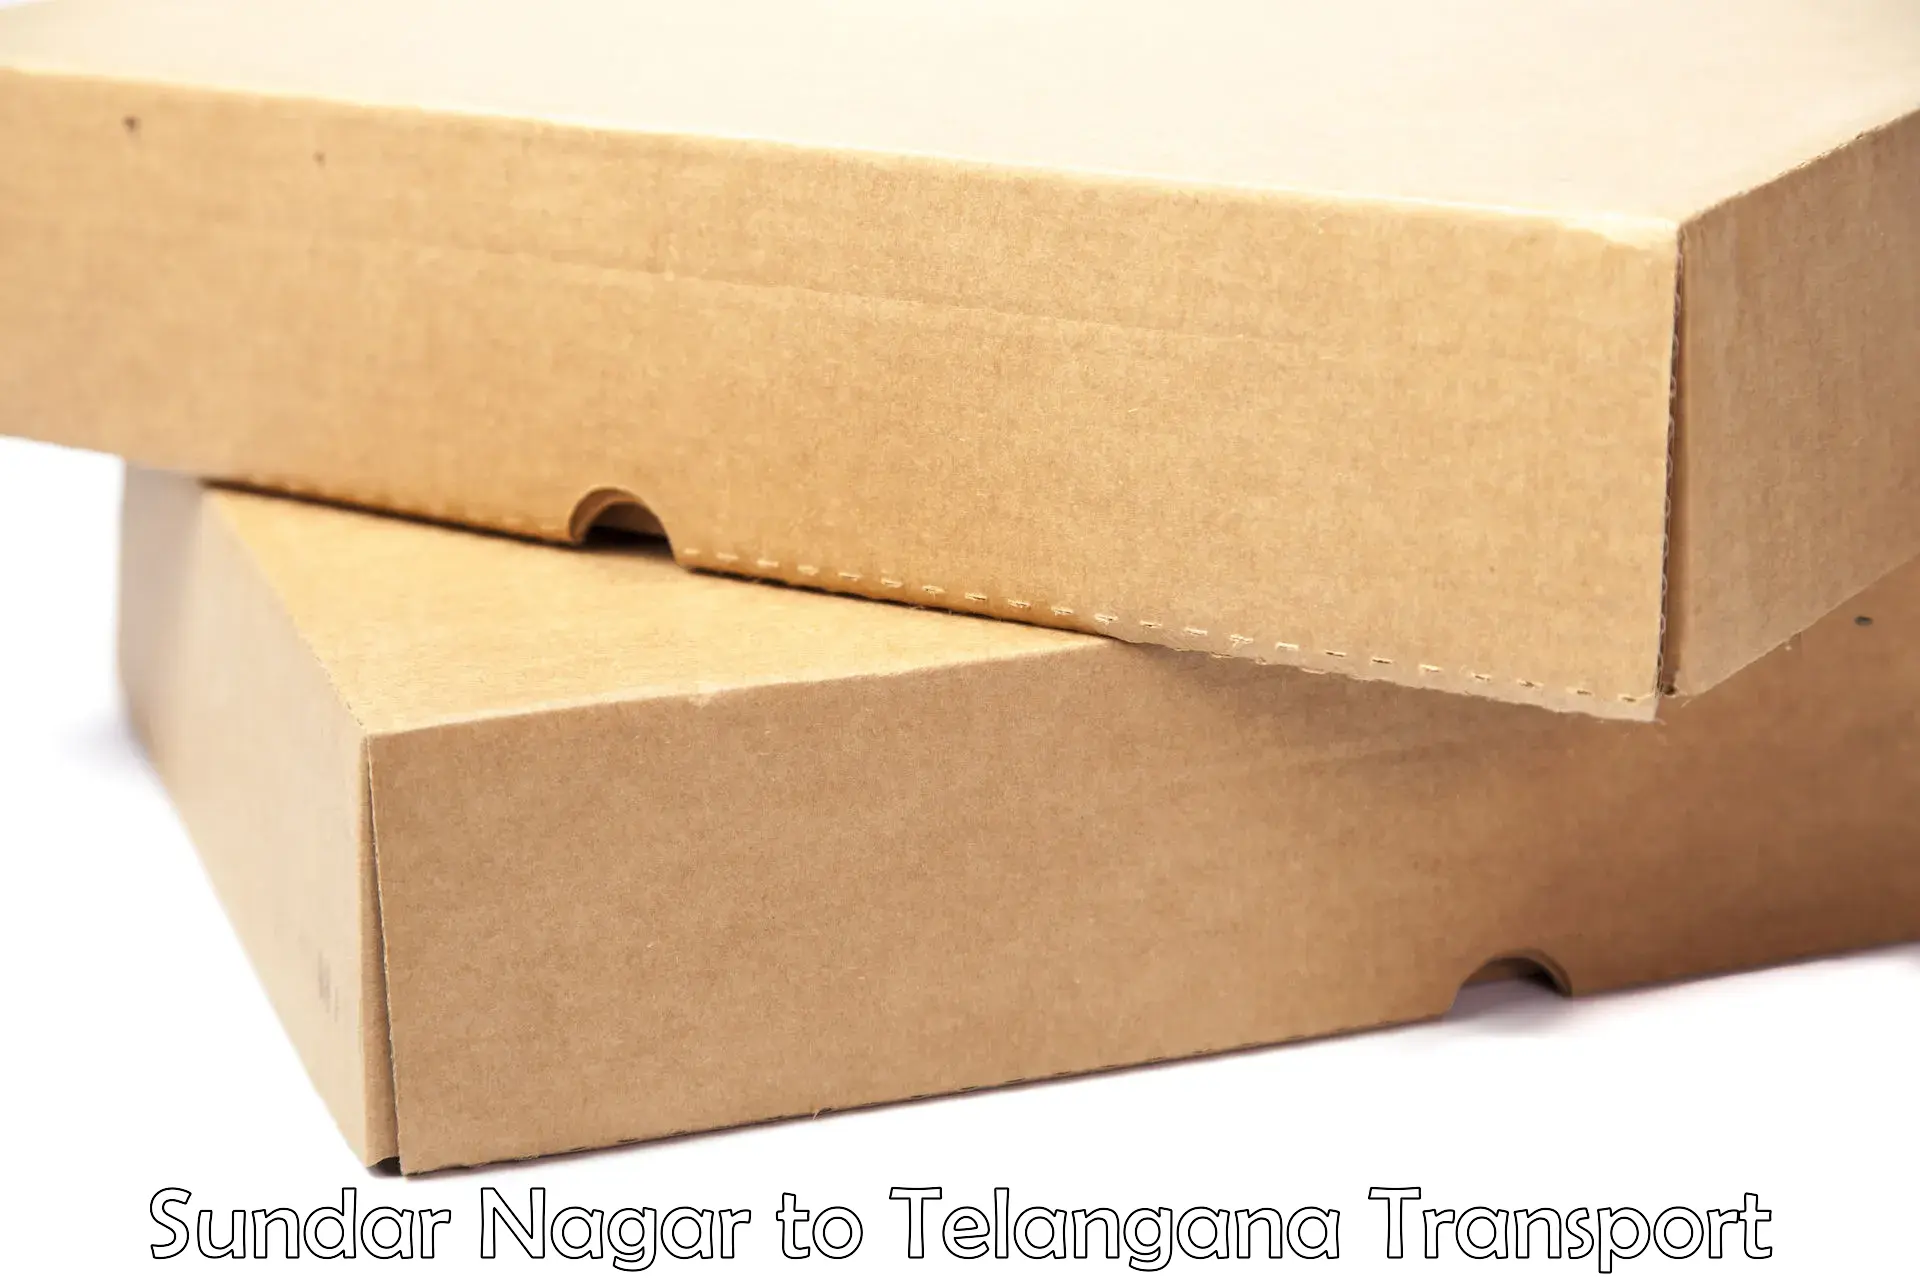 Package delivery services Sundar Nagar to Jagtial